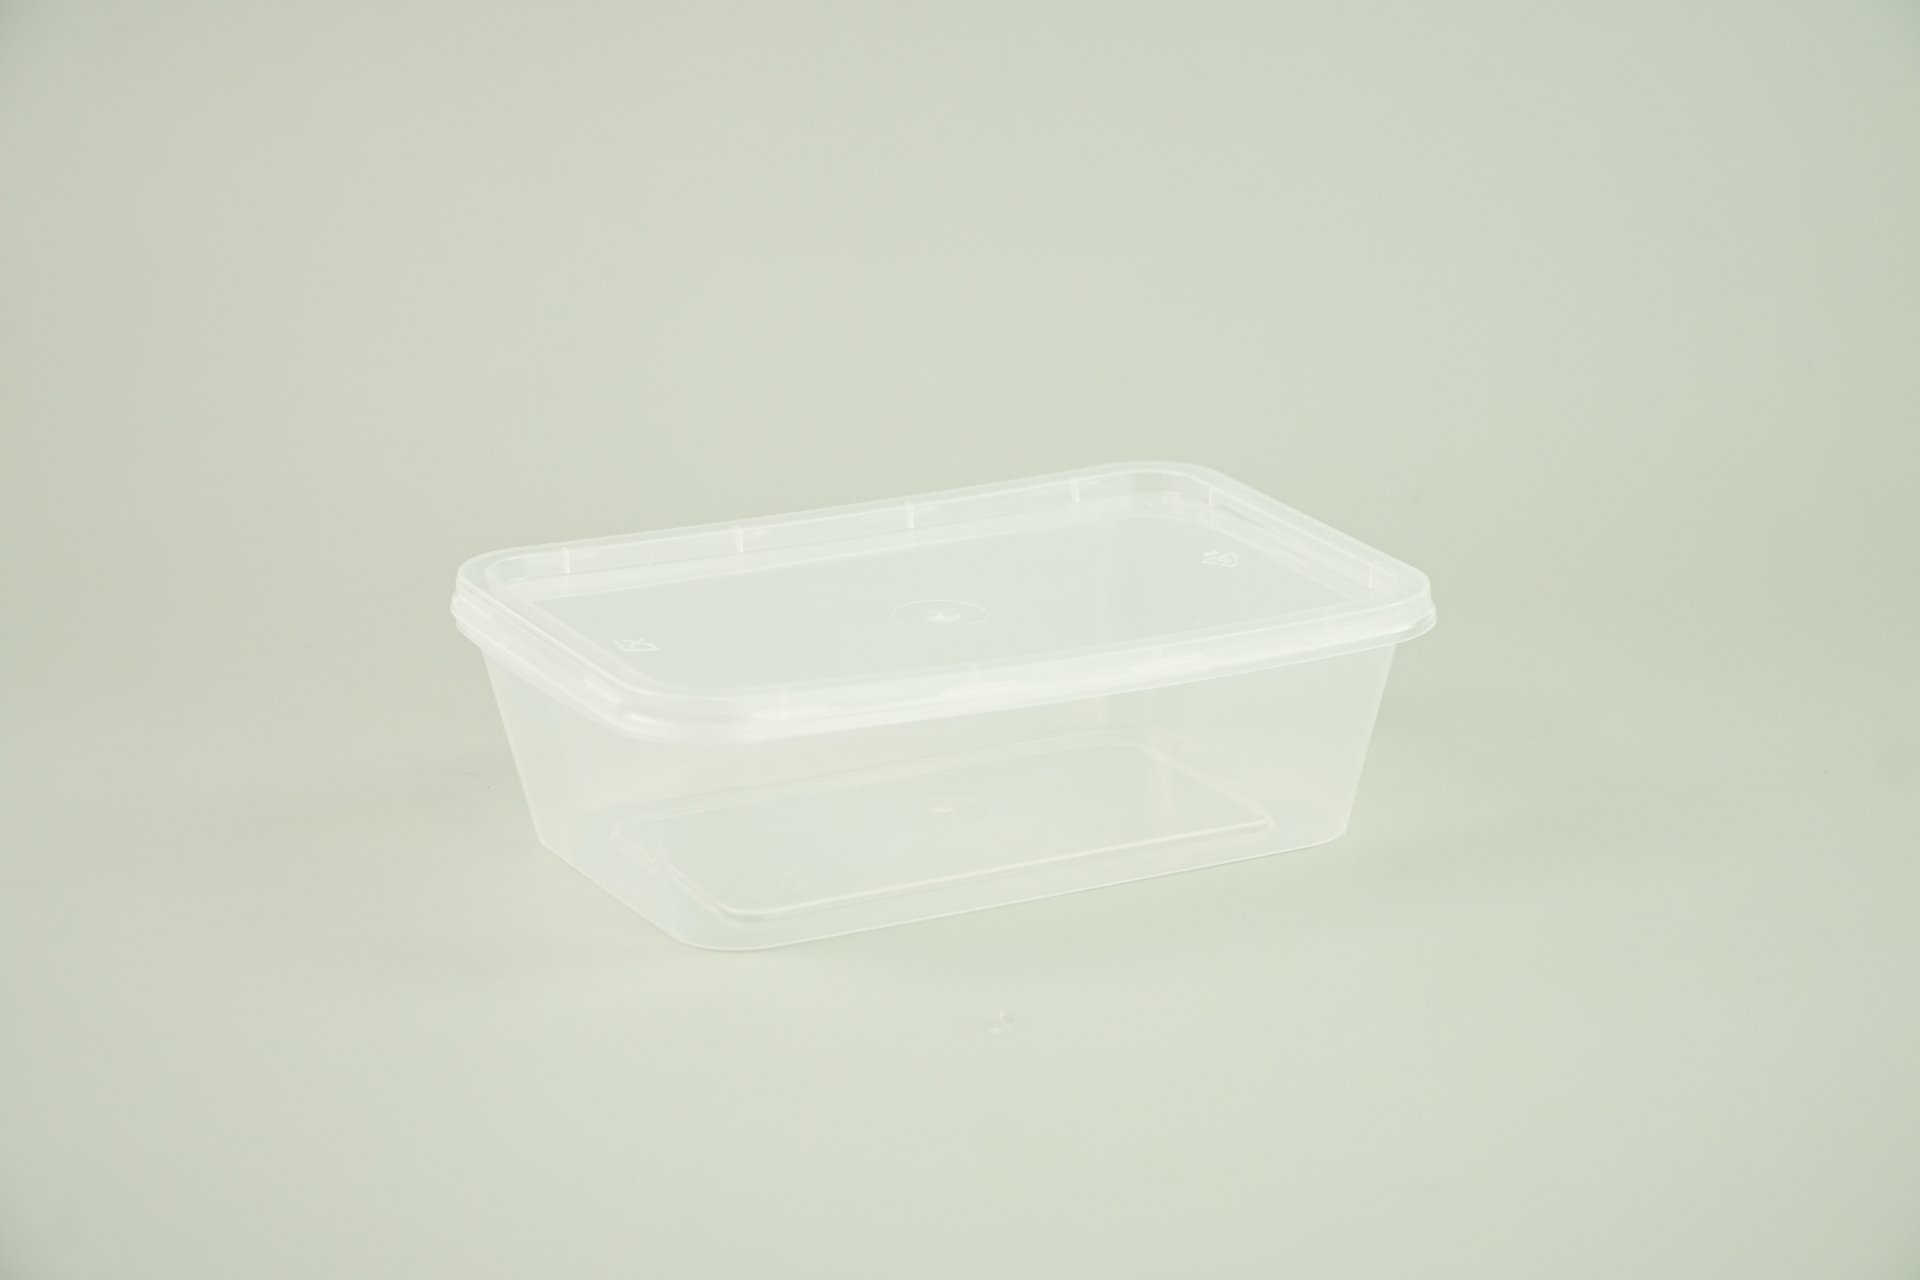 กล่องอาหาร PP สีใส เหลี่ยม 750ml. ขนาด 12x17x5 cm.